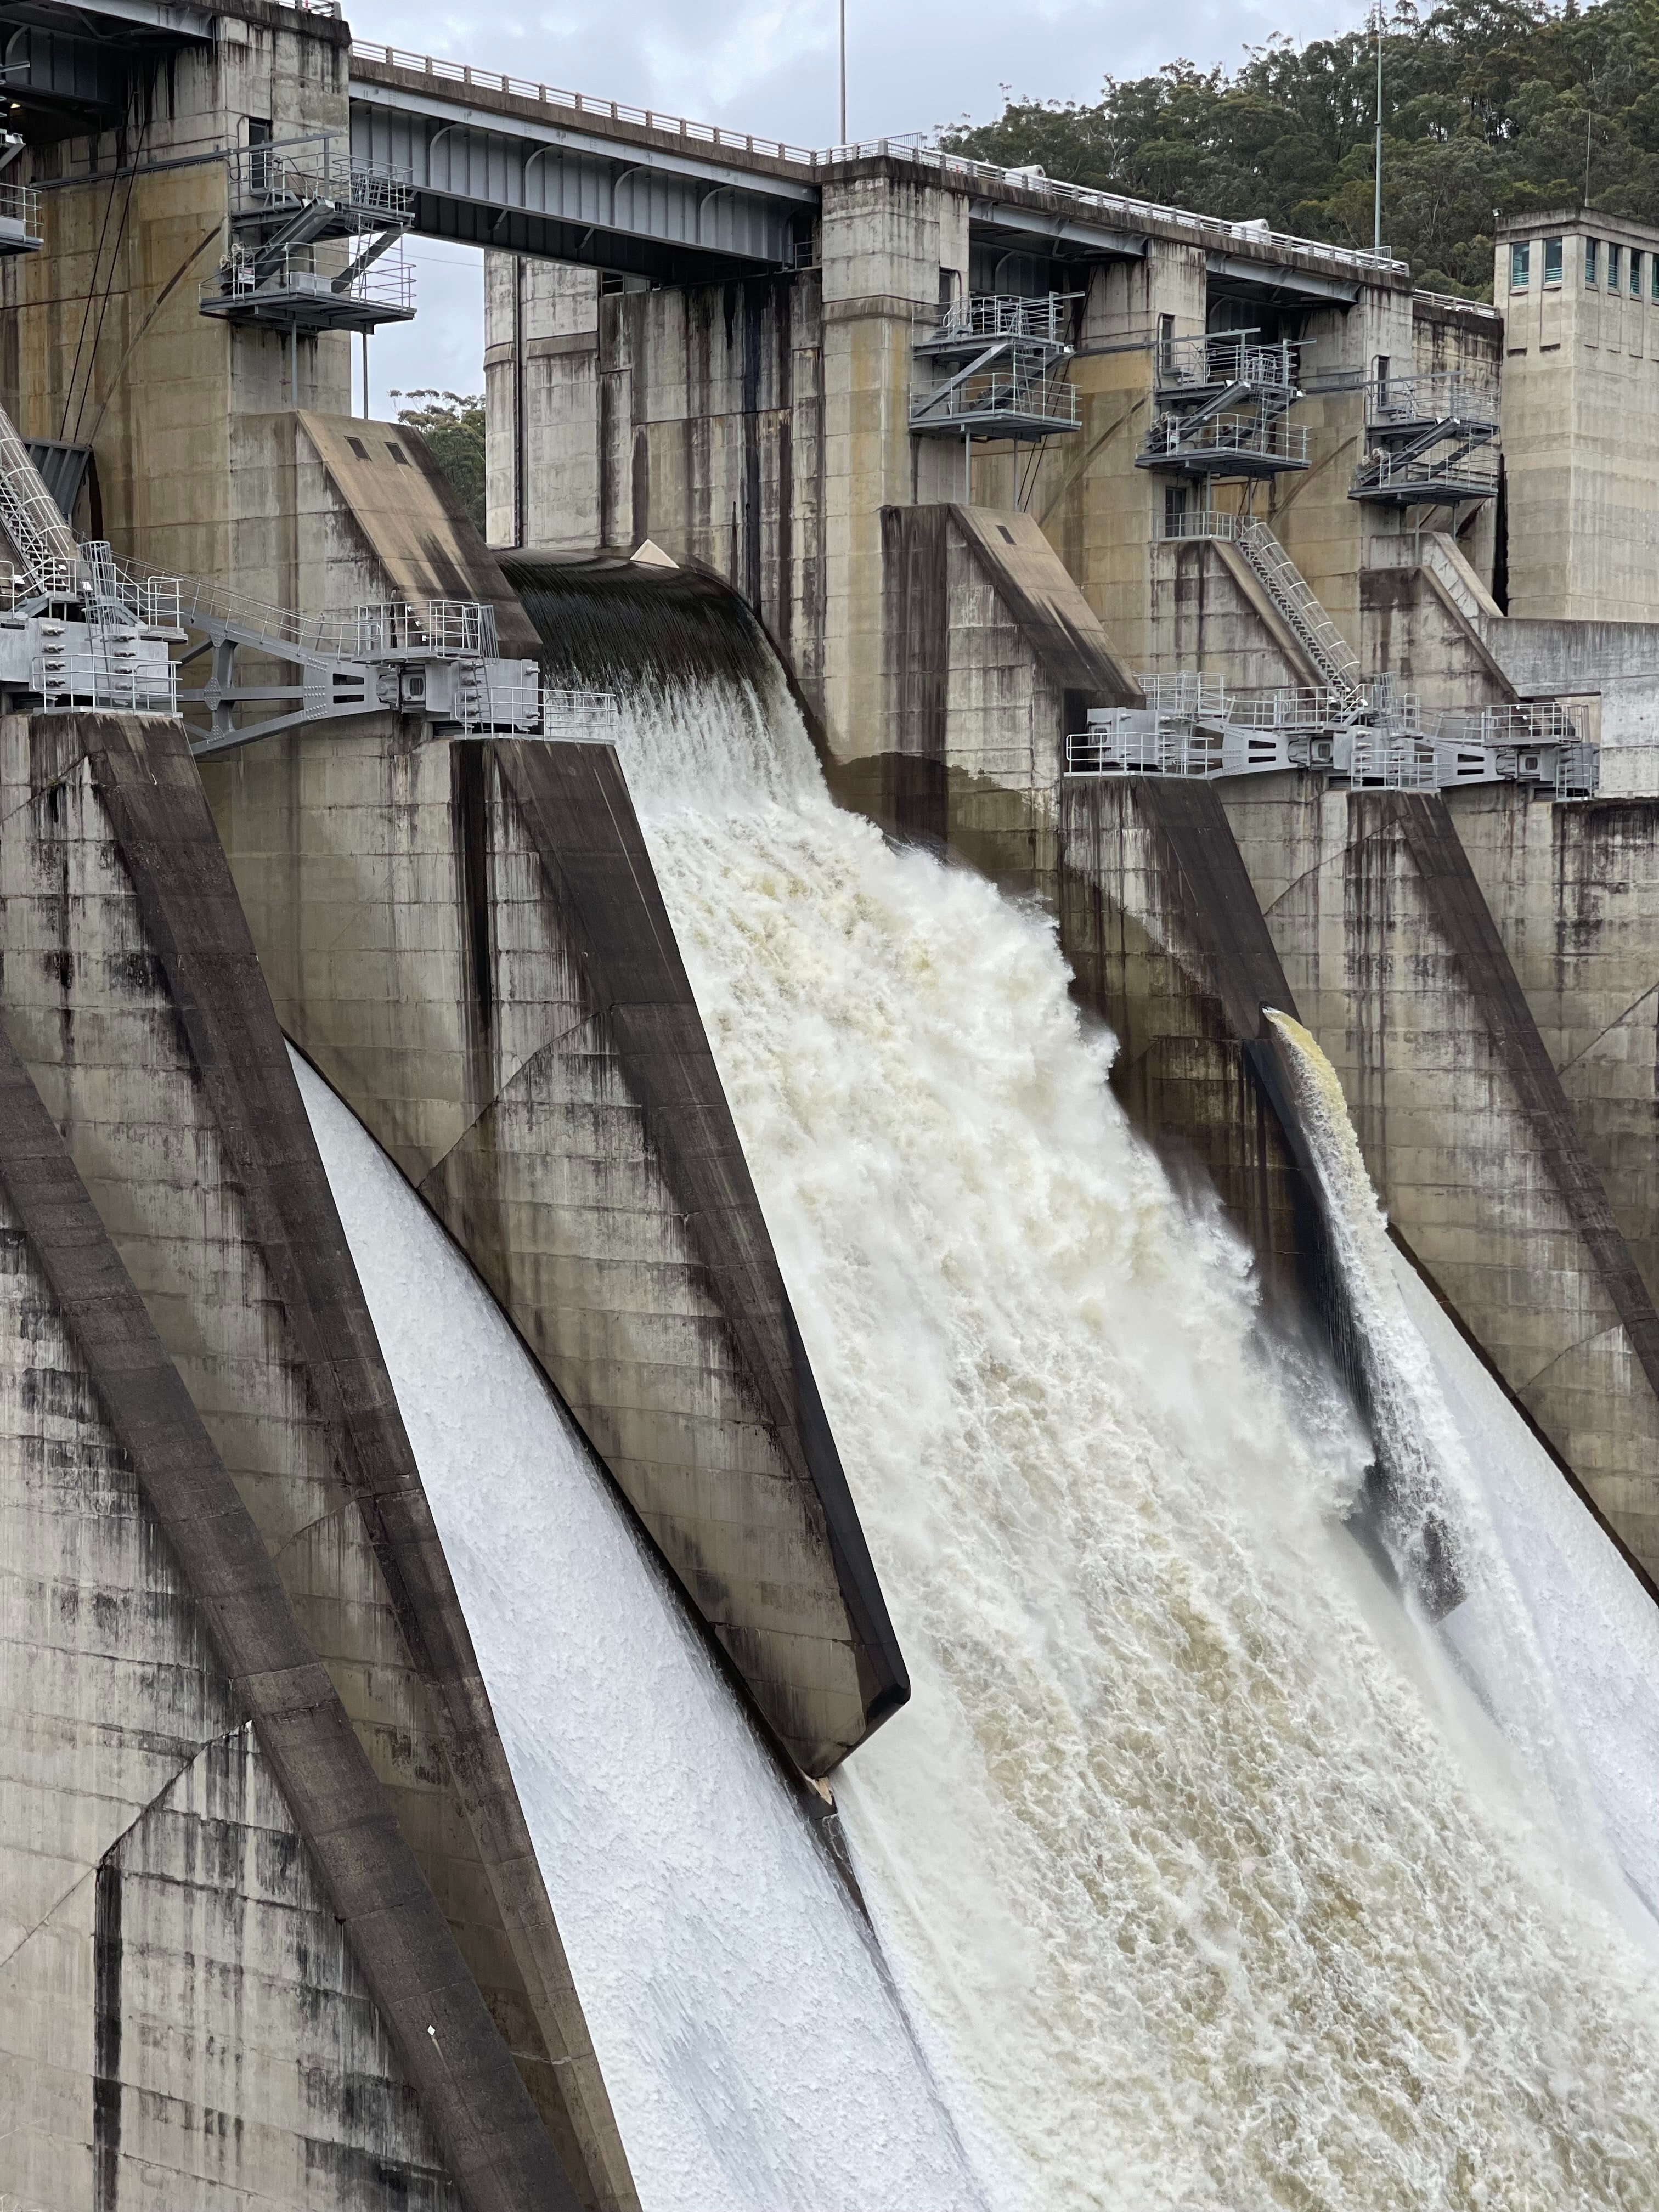 Best Hydropower Photo · 100% Free Downloads